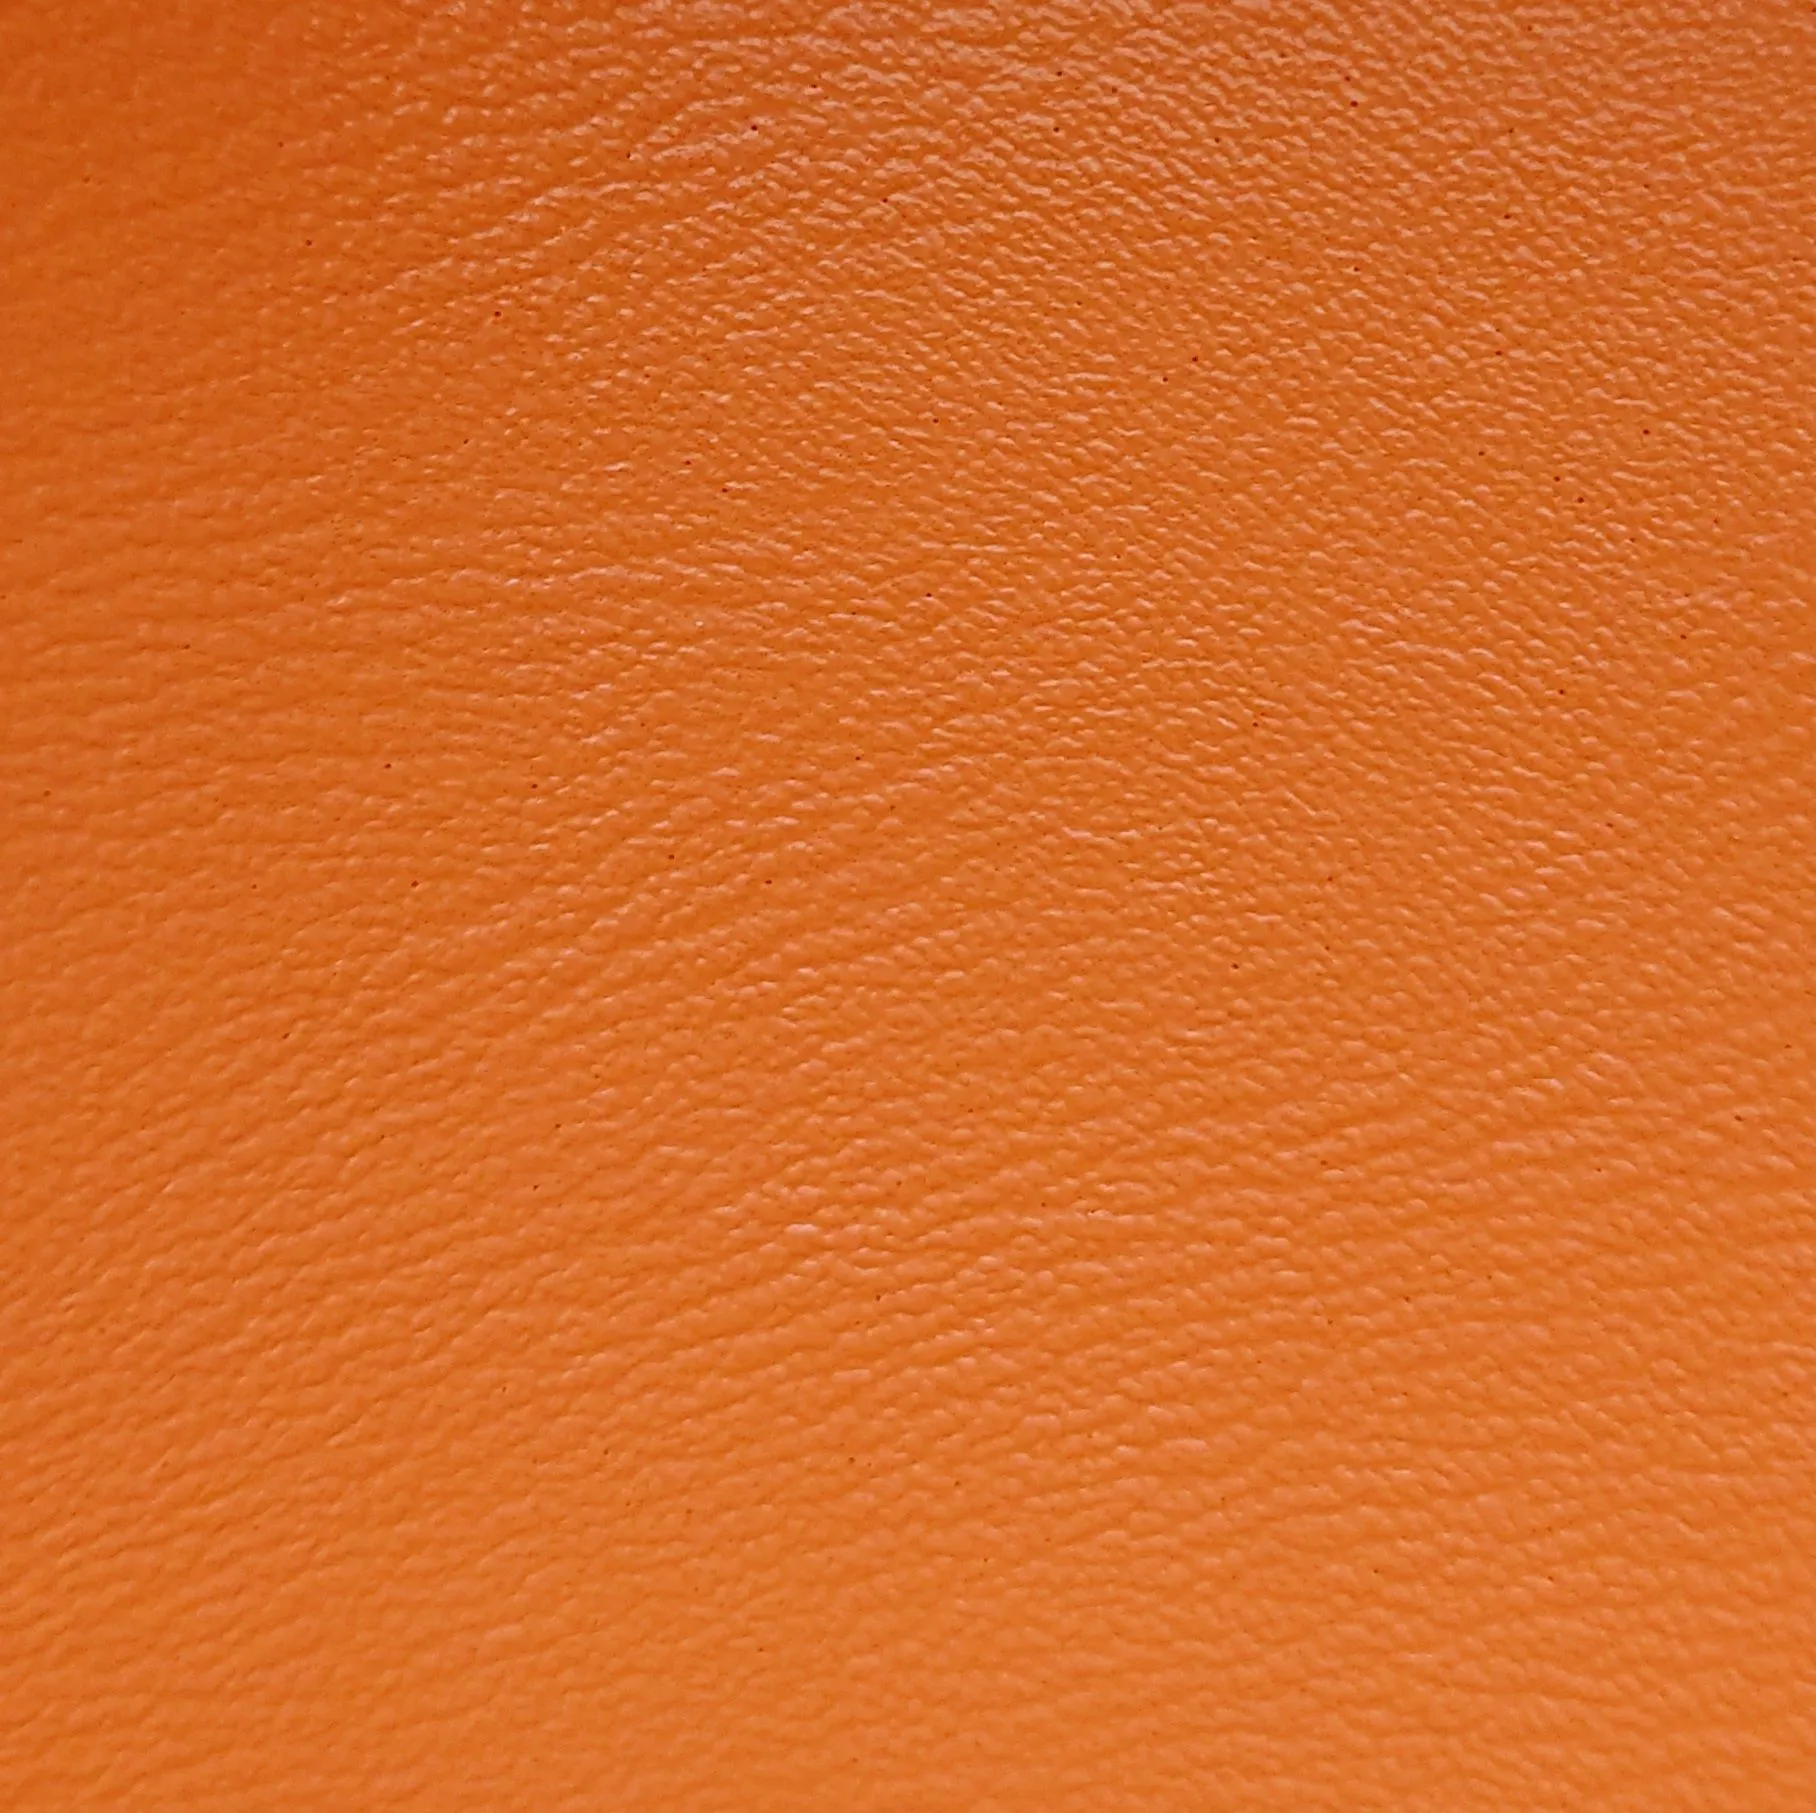 Balken Element 90 cm, orange